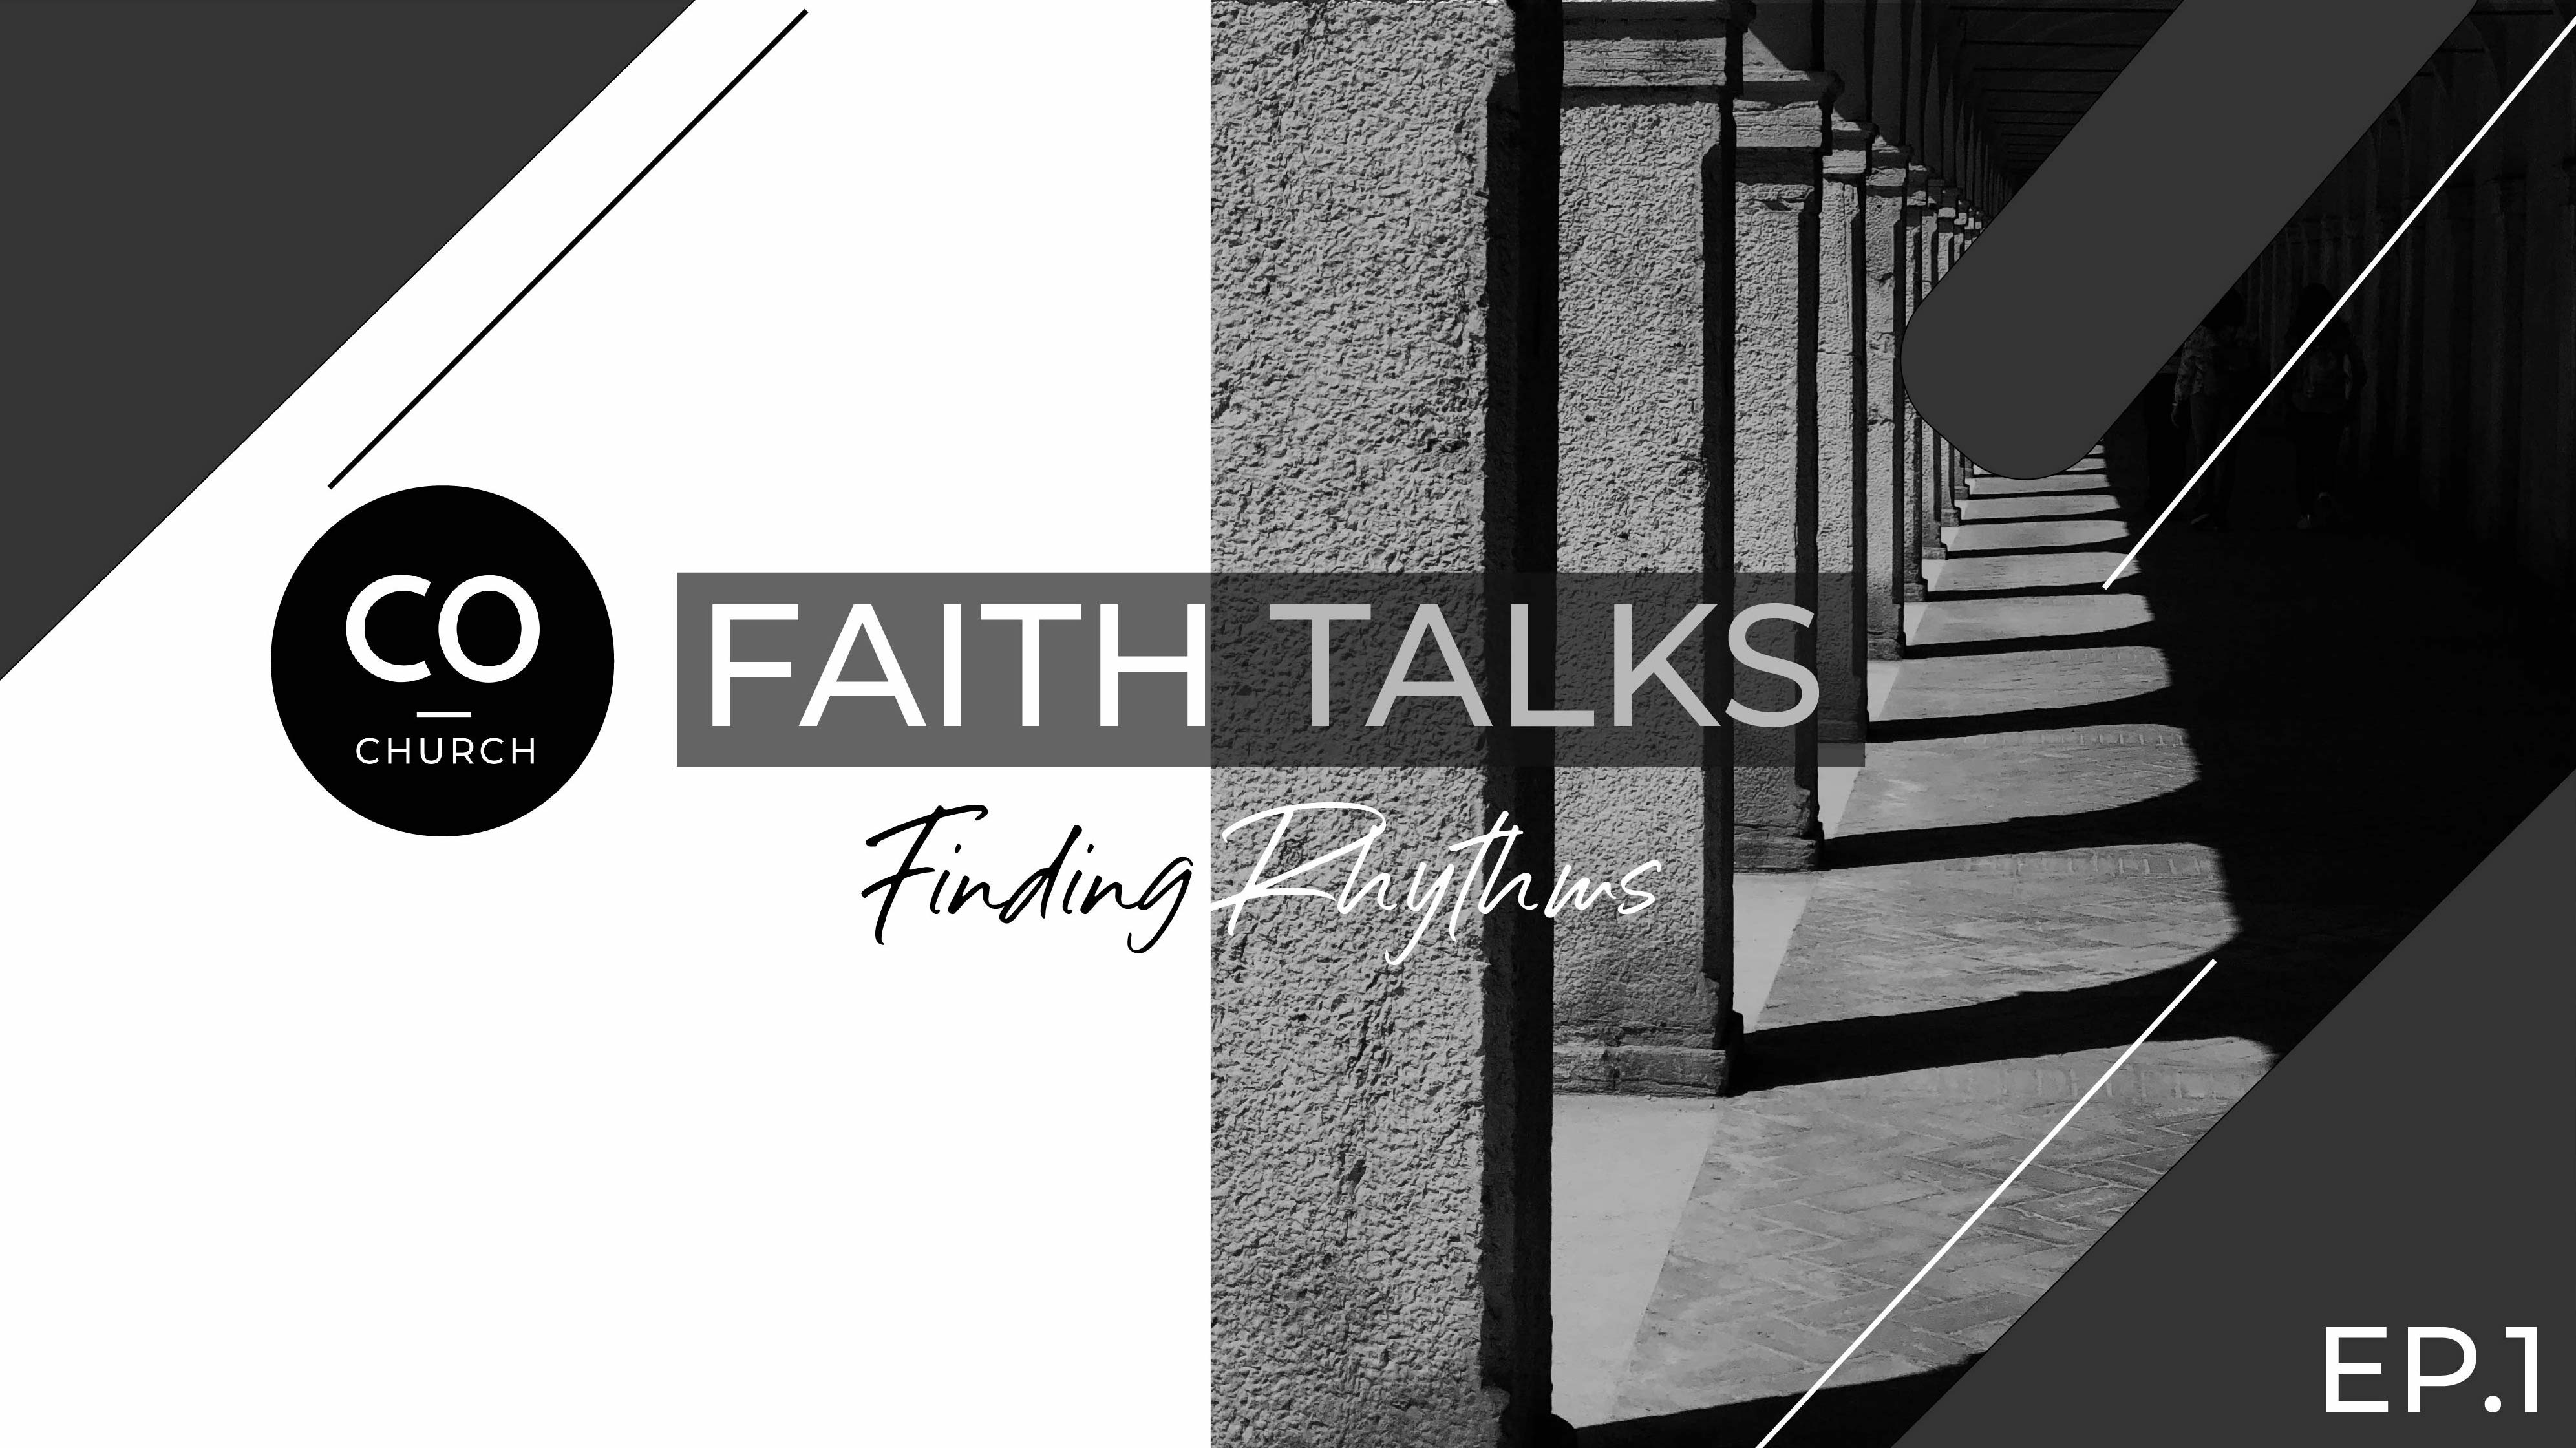 Faith Talks - Finding a Rhythm 